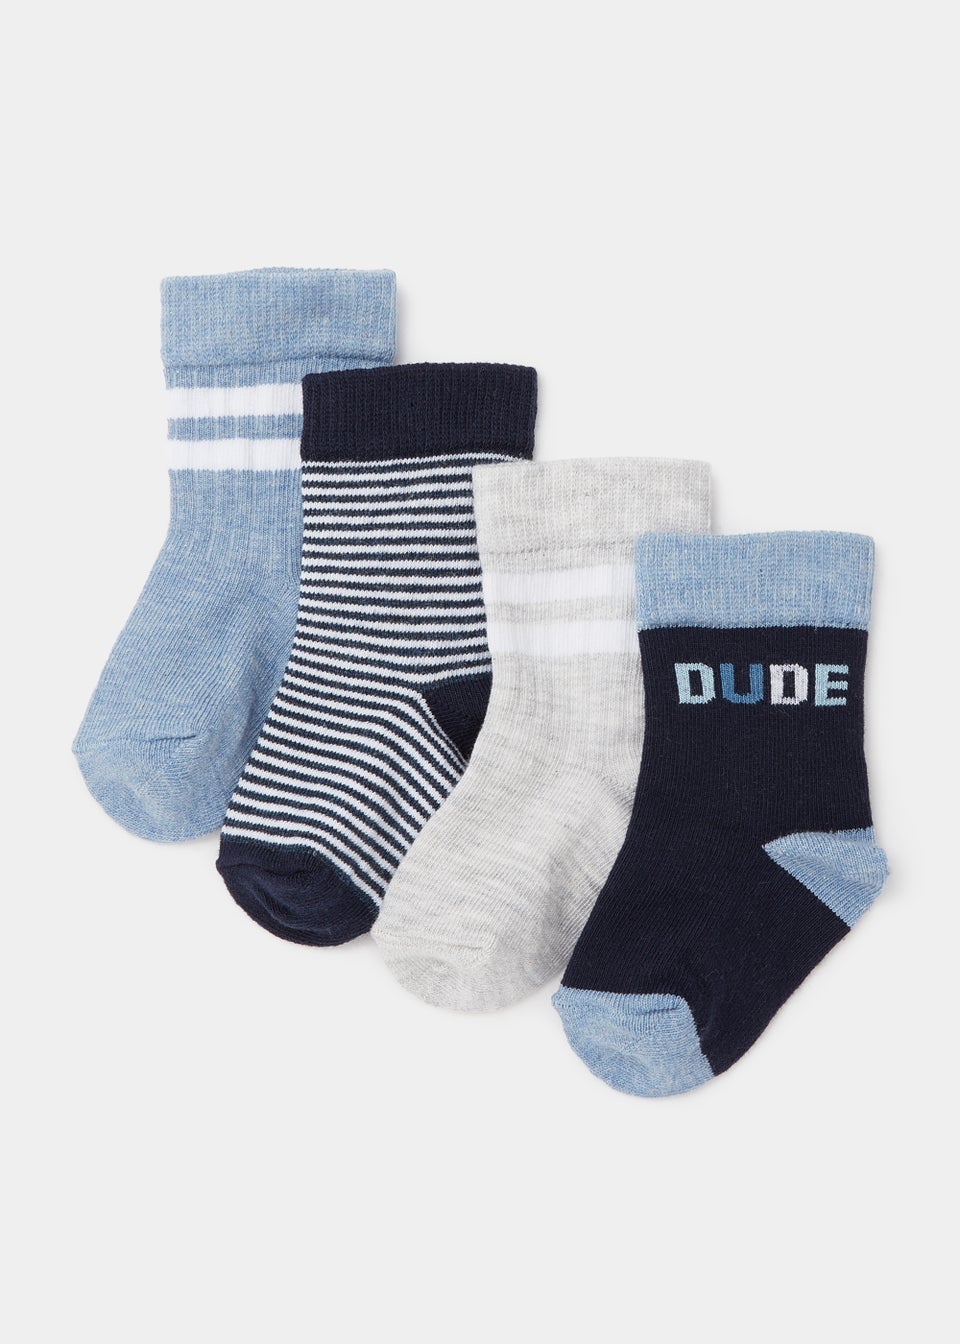 4 Pack Blue Sports Socks (Newborn-23mths)